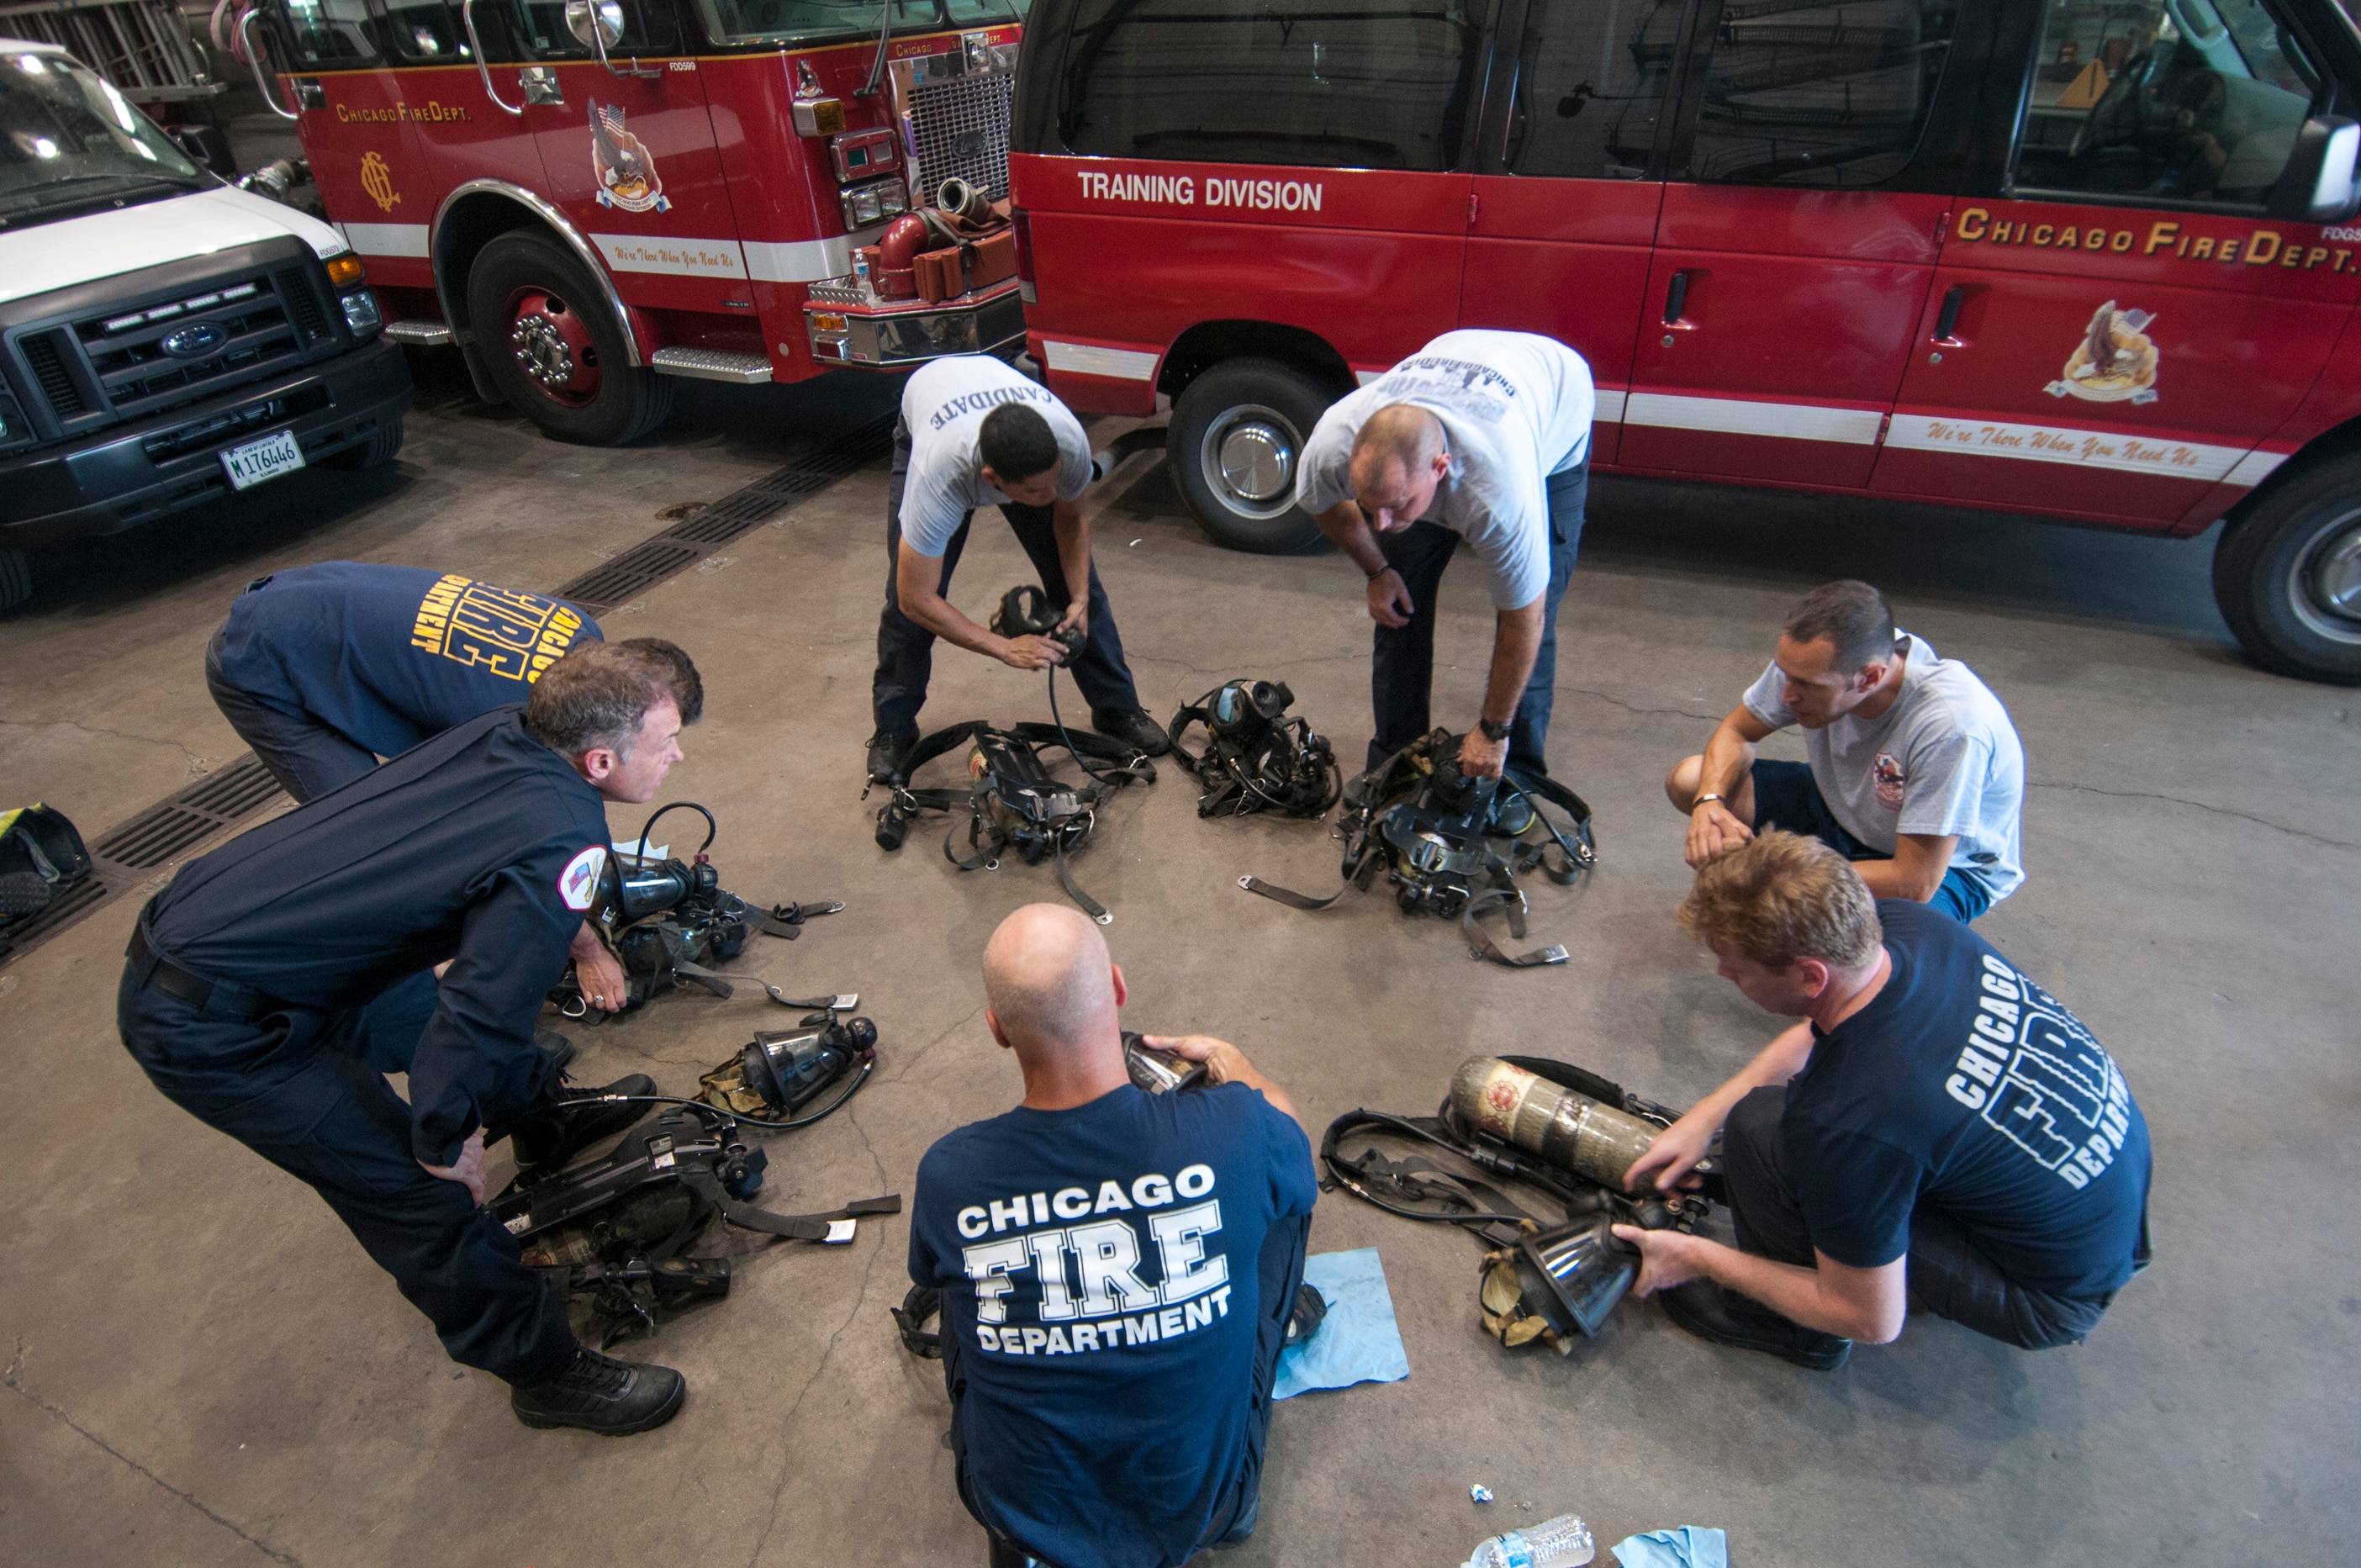 Chicago Fire: Firefighter Training Photo: 272326 - NBC.com